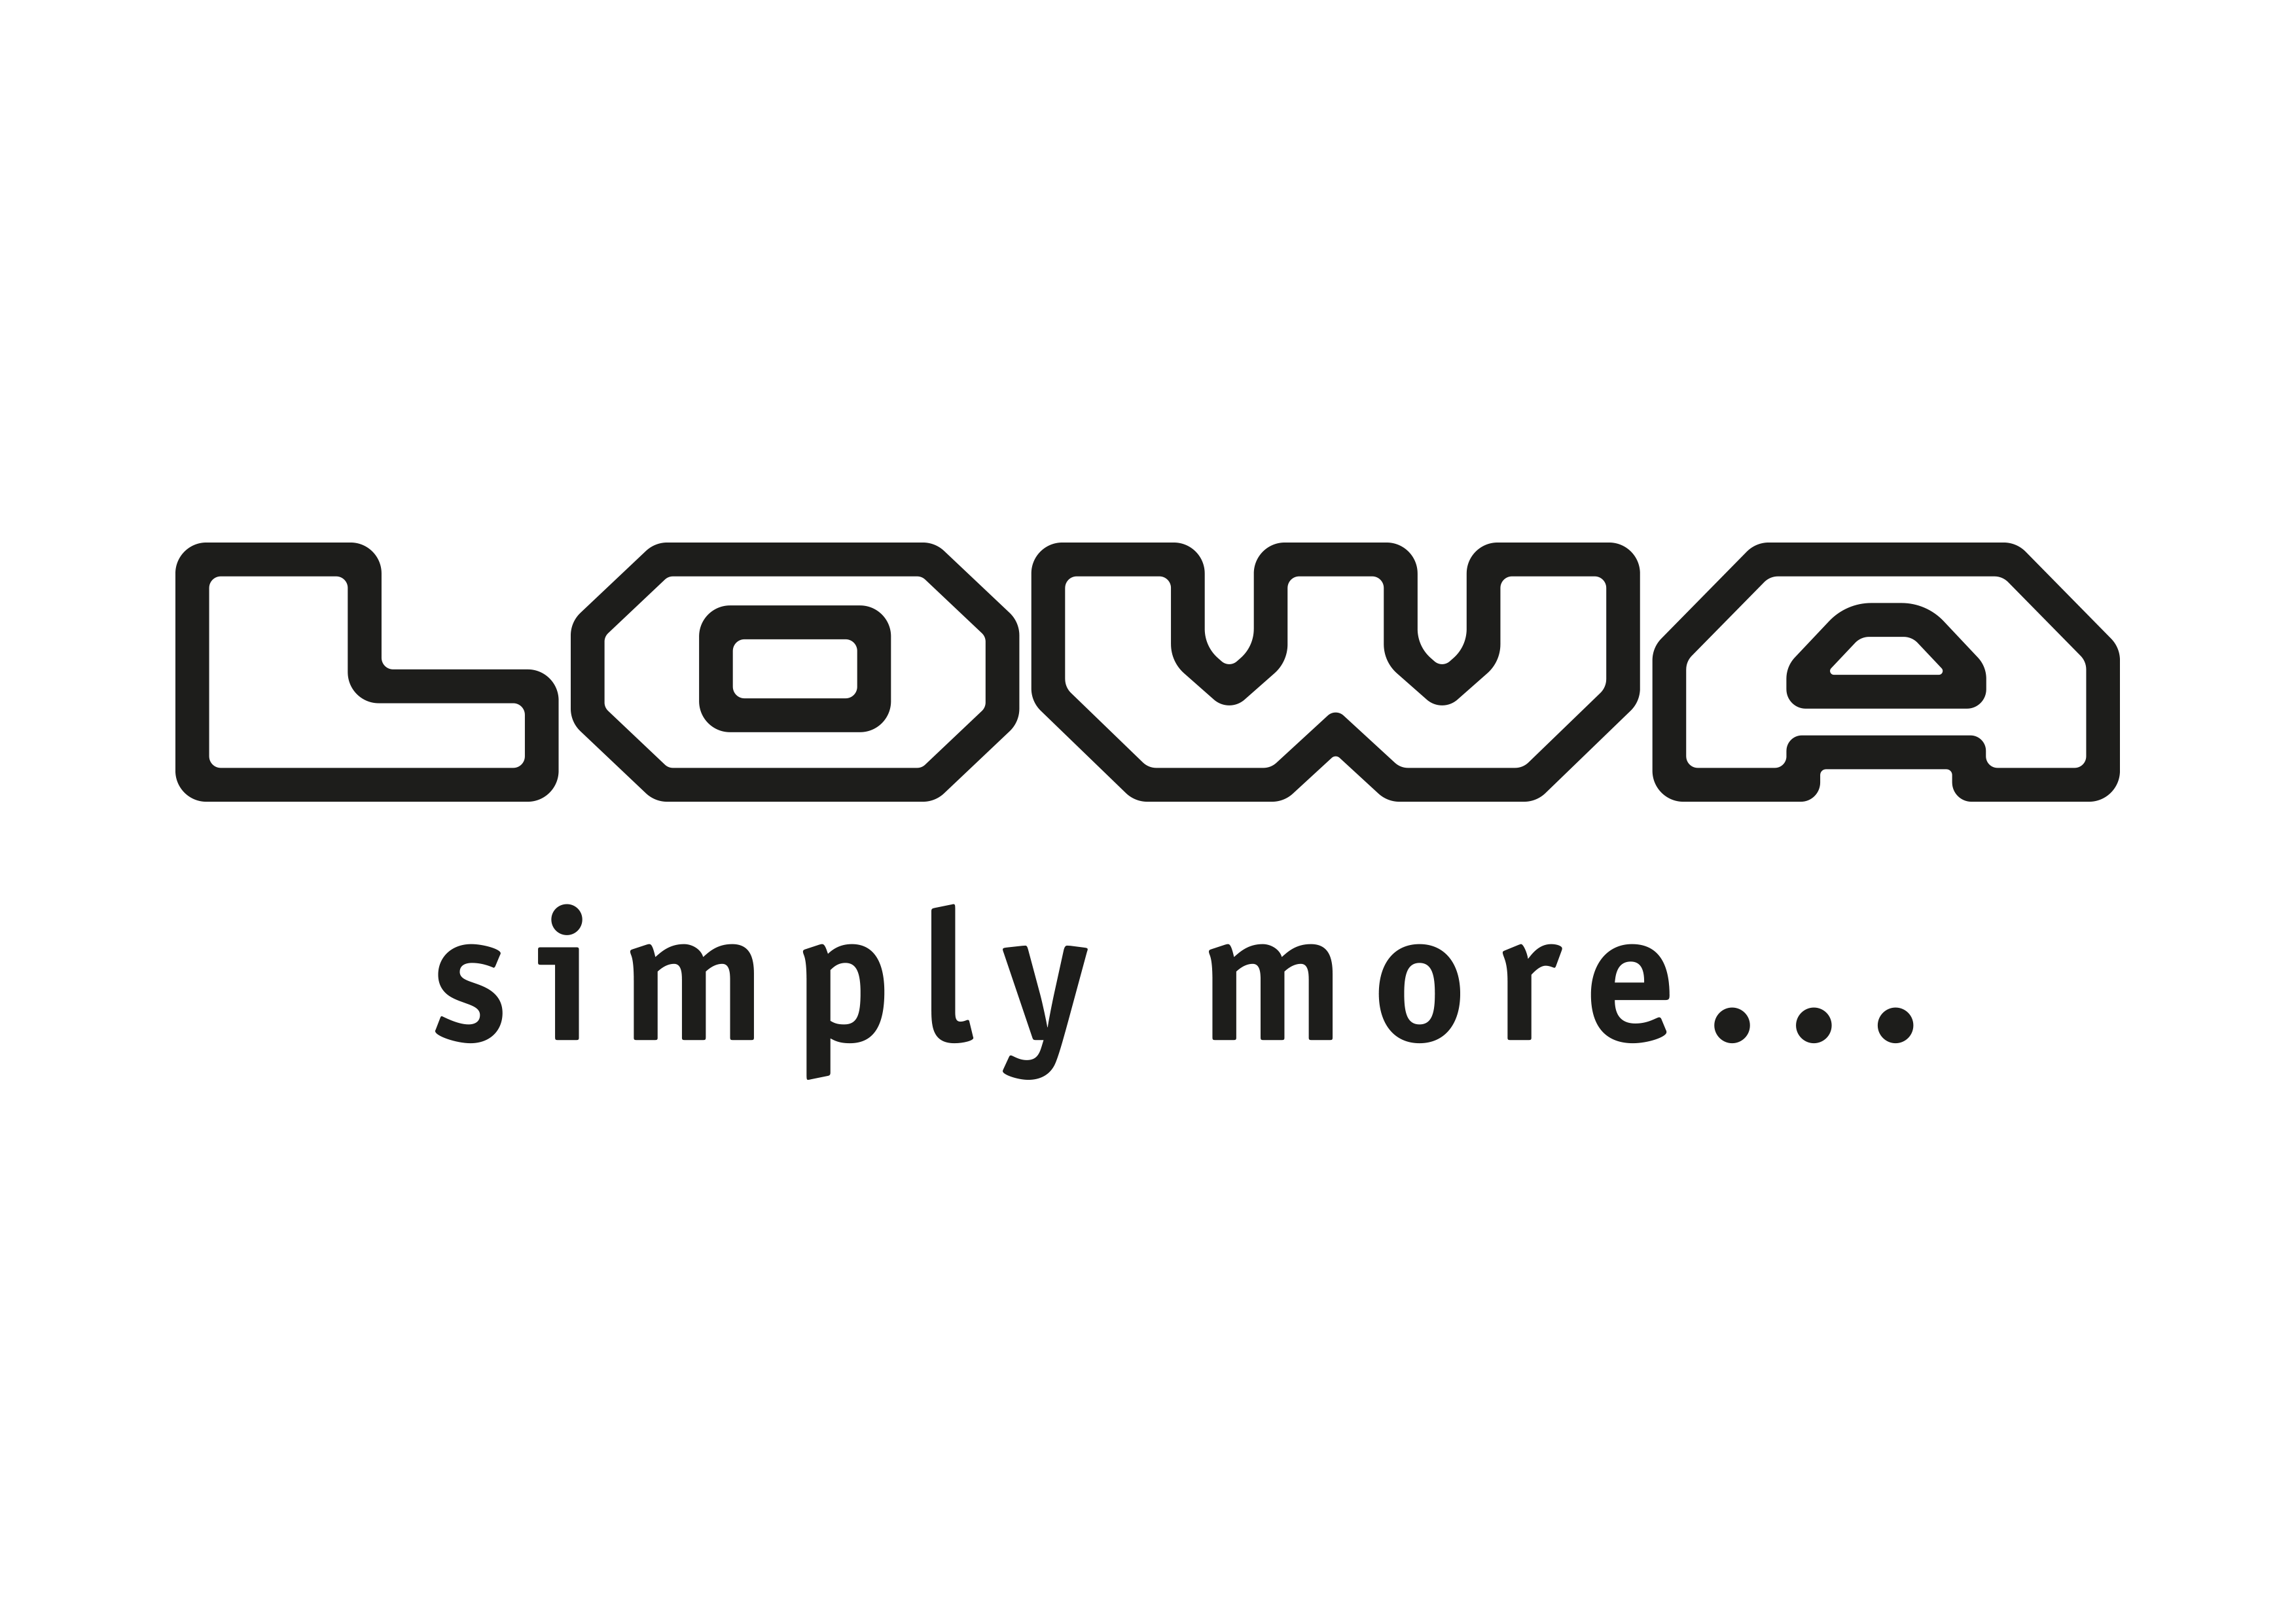 Logo Lowa